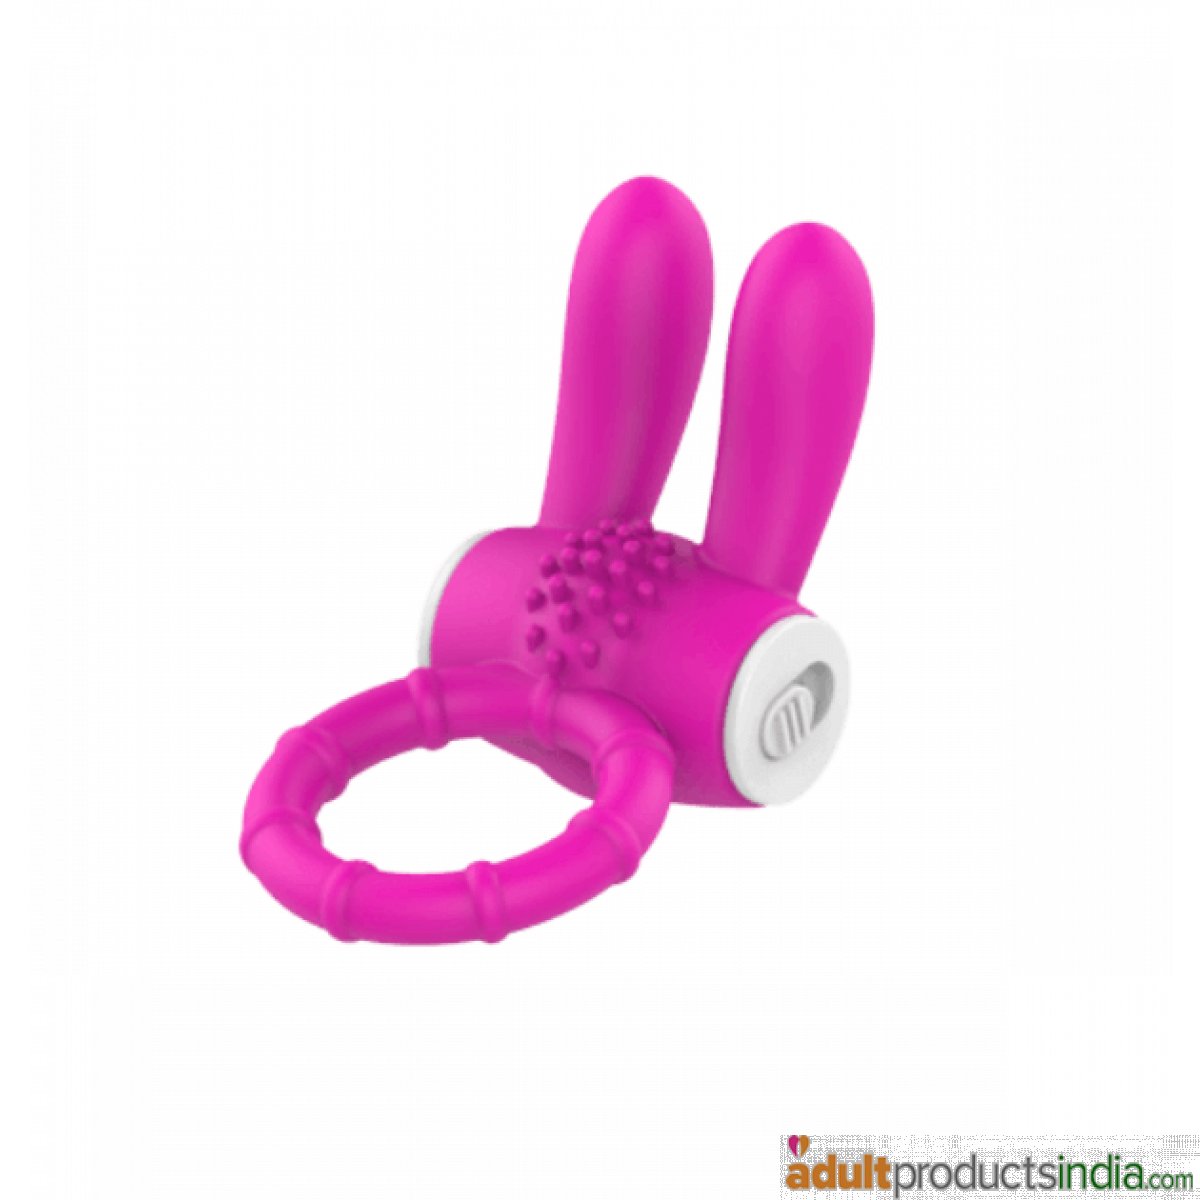 Bunny Vibrating Cock Ring - Pink